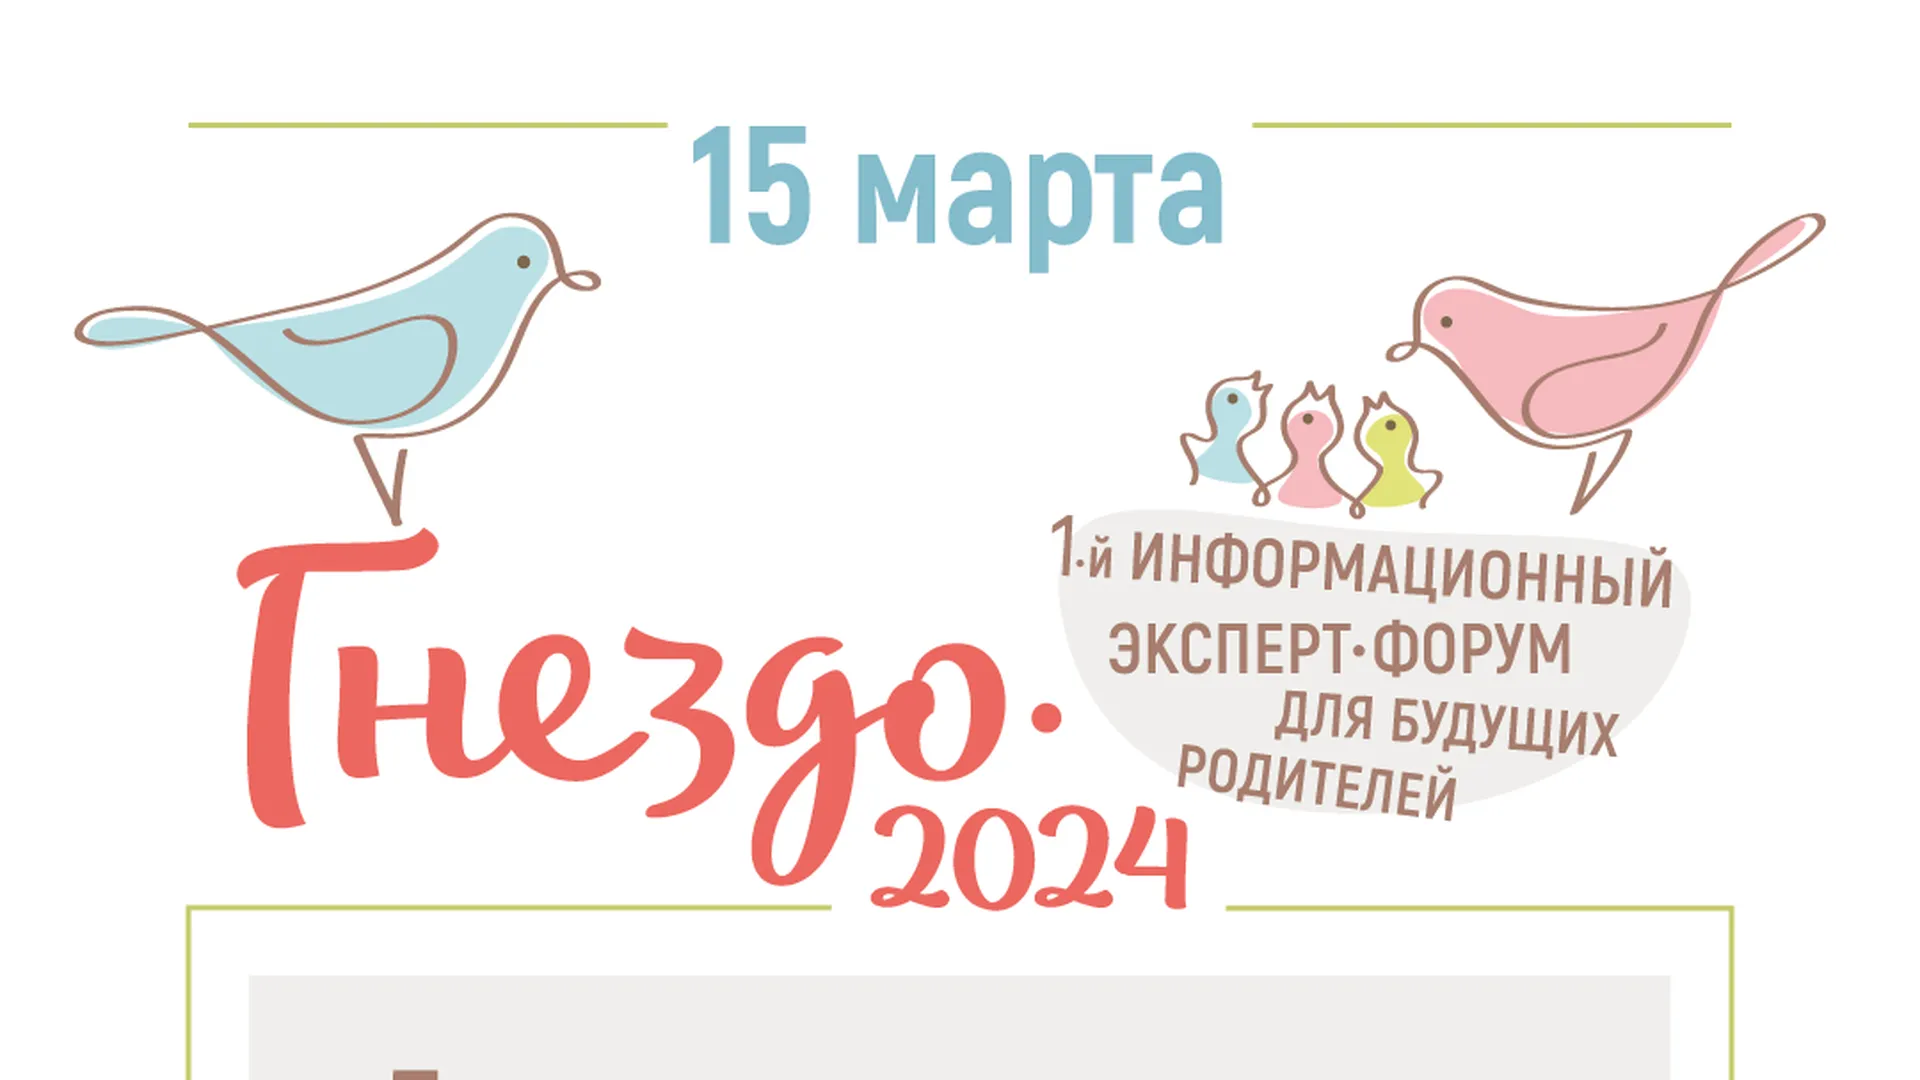 Врачи Балашихинского роддома примут участие в форуме для будущих родителей 15 марта